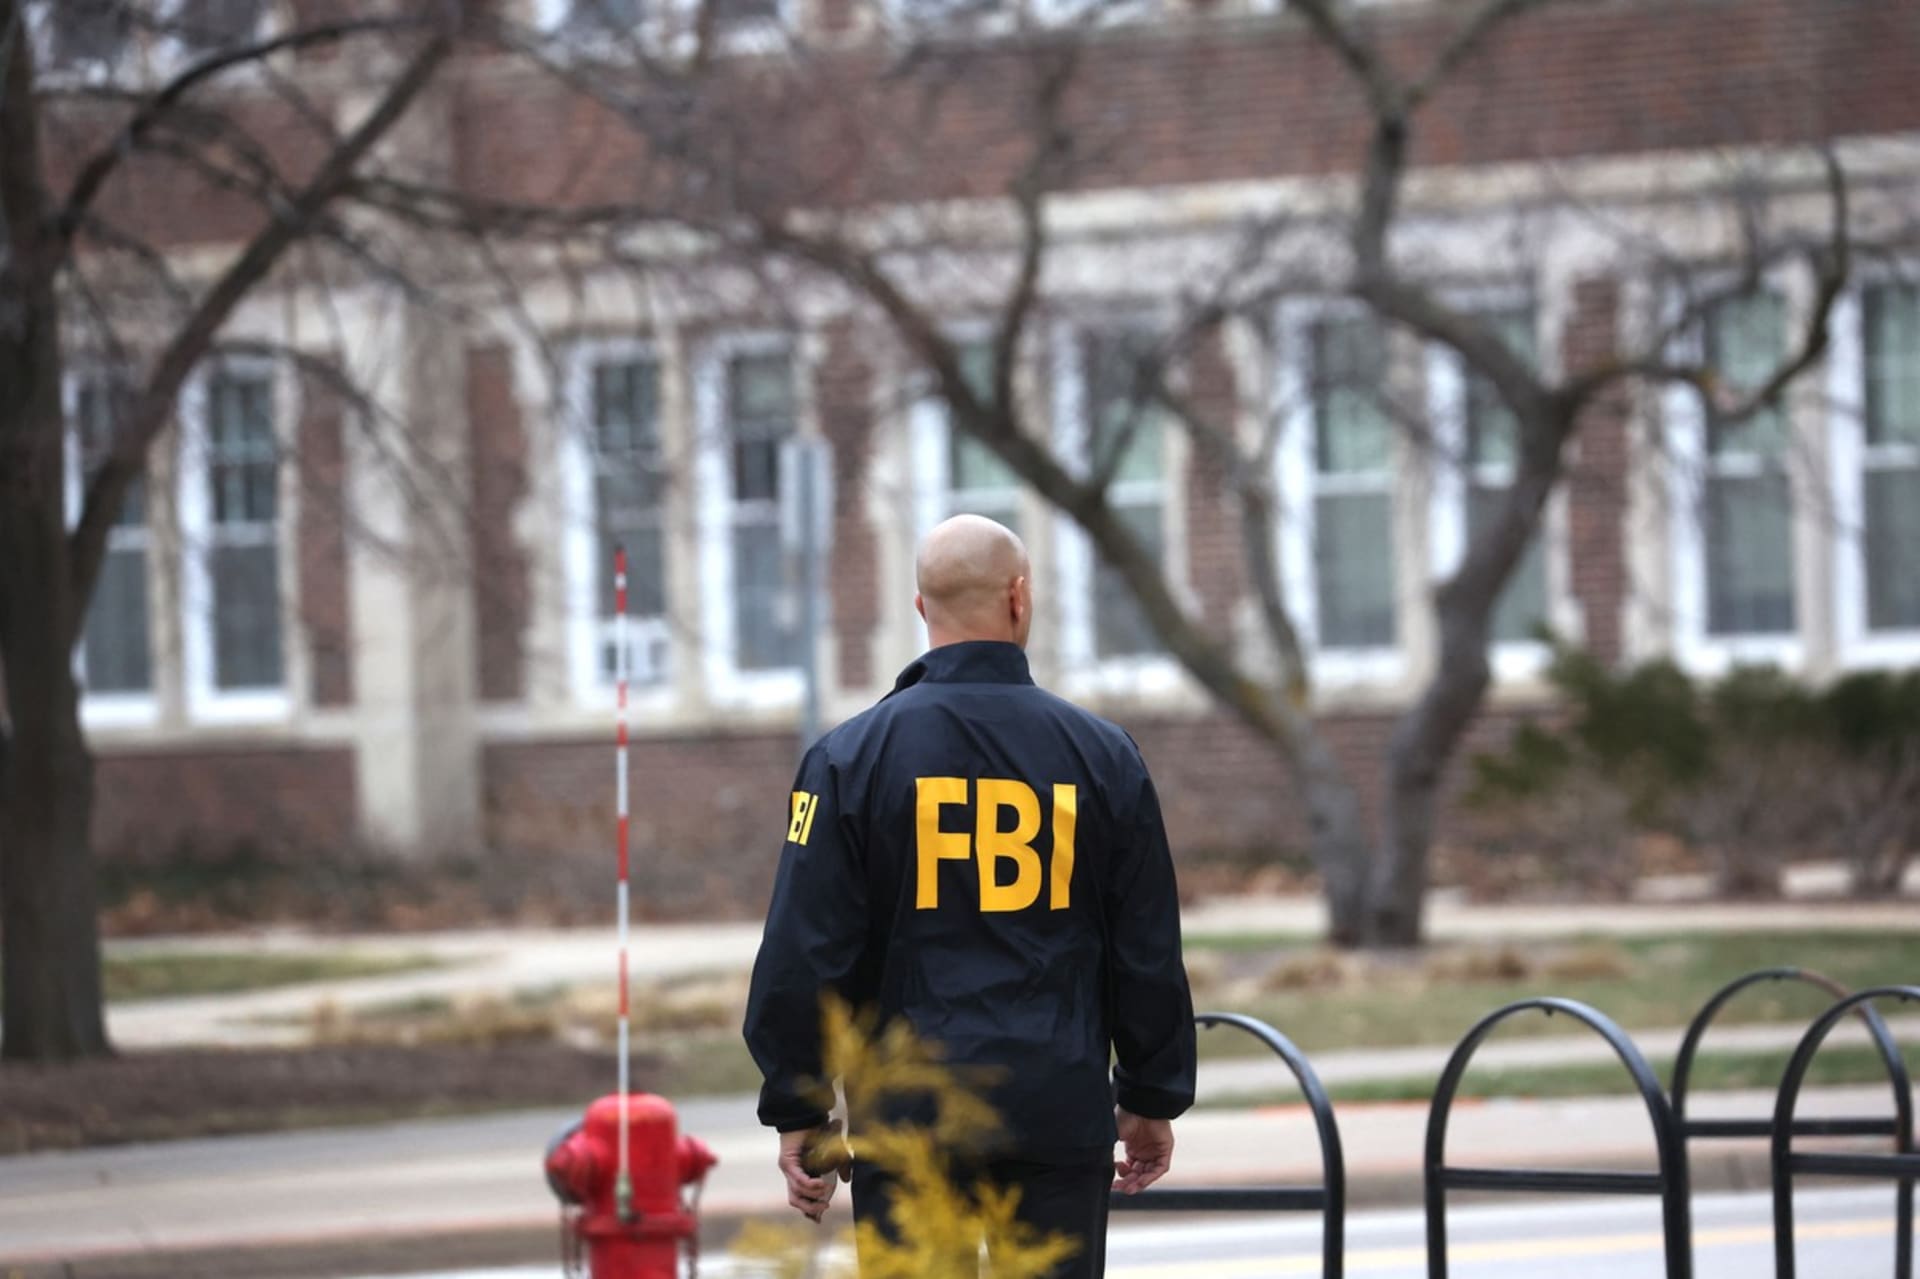 FBI je orgán amerického ministerstva spravedlnosti, který působí jako federální vyšetřovací úřad trestné činnosti a kontrarozvědná služba. Vznikl 26. července 1908.